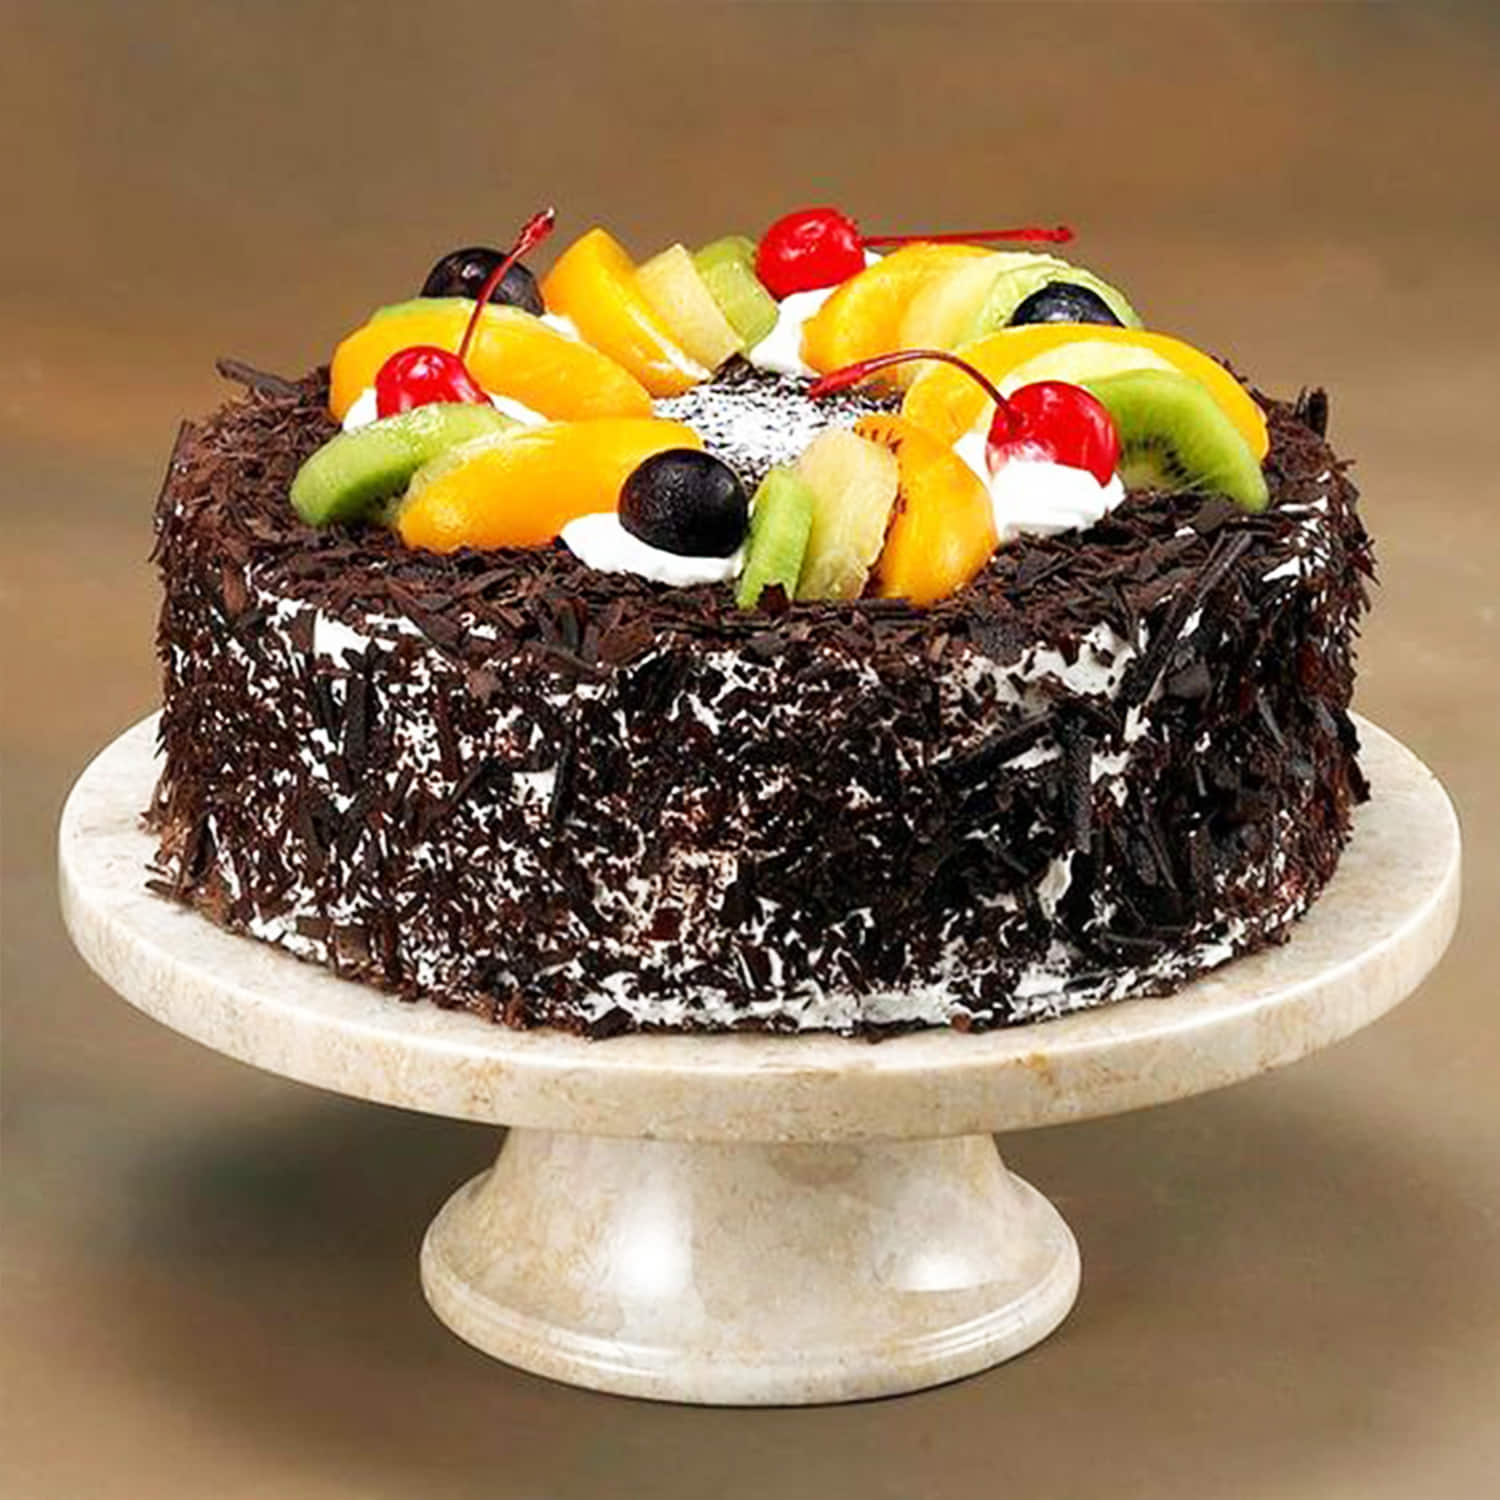 Buy/Send Heart Shape Black Forest Cake Half kg Online- Winni | Winni.in